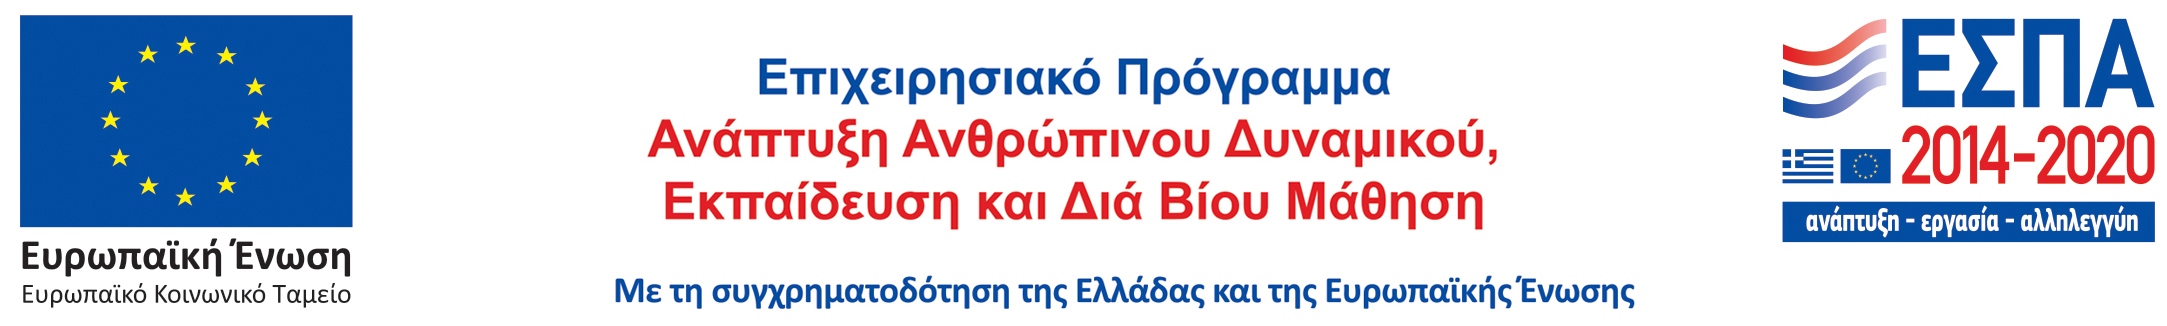 Επιχειρησιακό Πρόγραμμα Ανάπτυξη Ανθρωπίνου Δυναμικού, Εκπαίδευση και Δια Βίου Μάθηση. Με τη συγχρηματοδότηση της Ελλάδας και της Ευρωπαϊκής Ένωσης